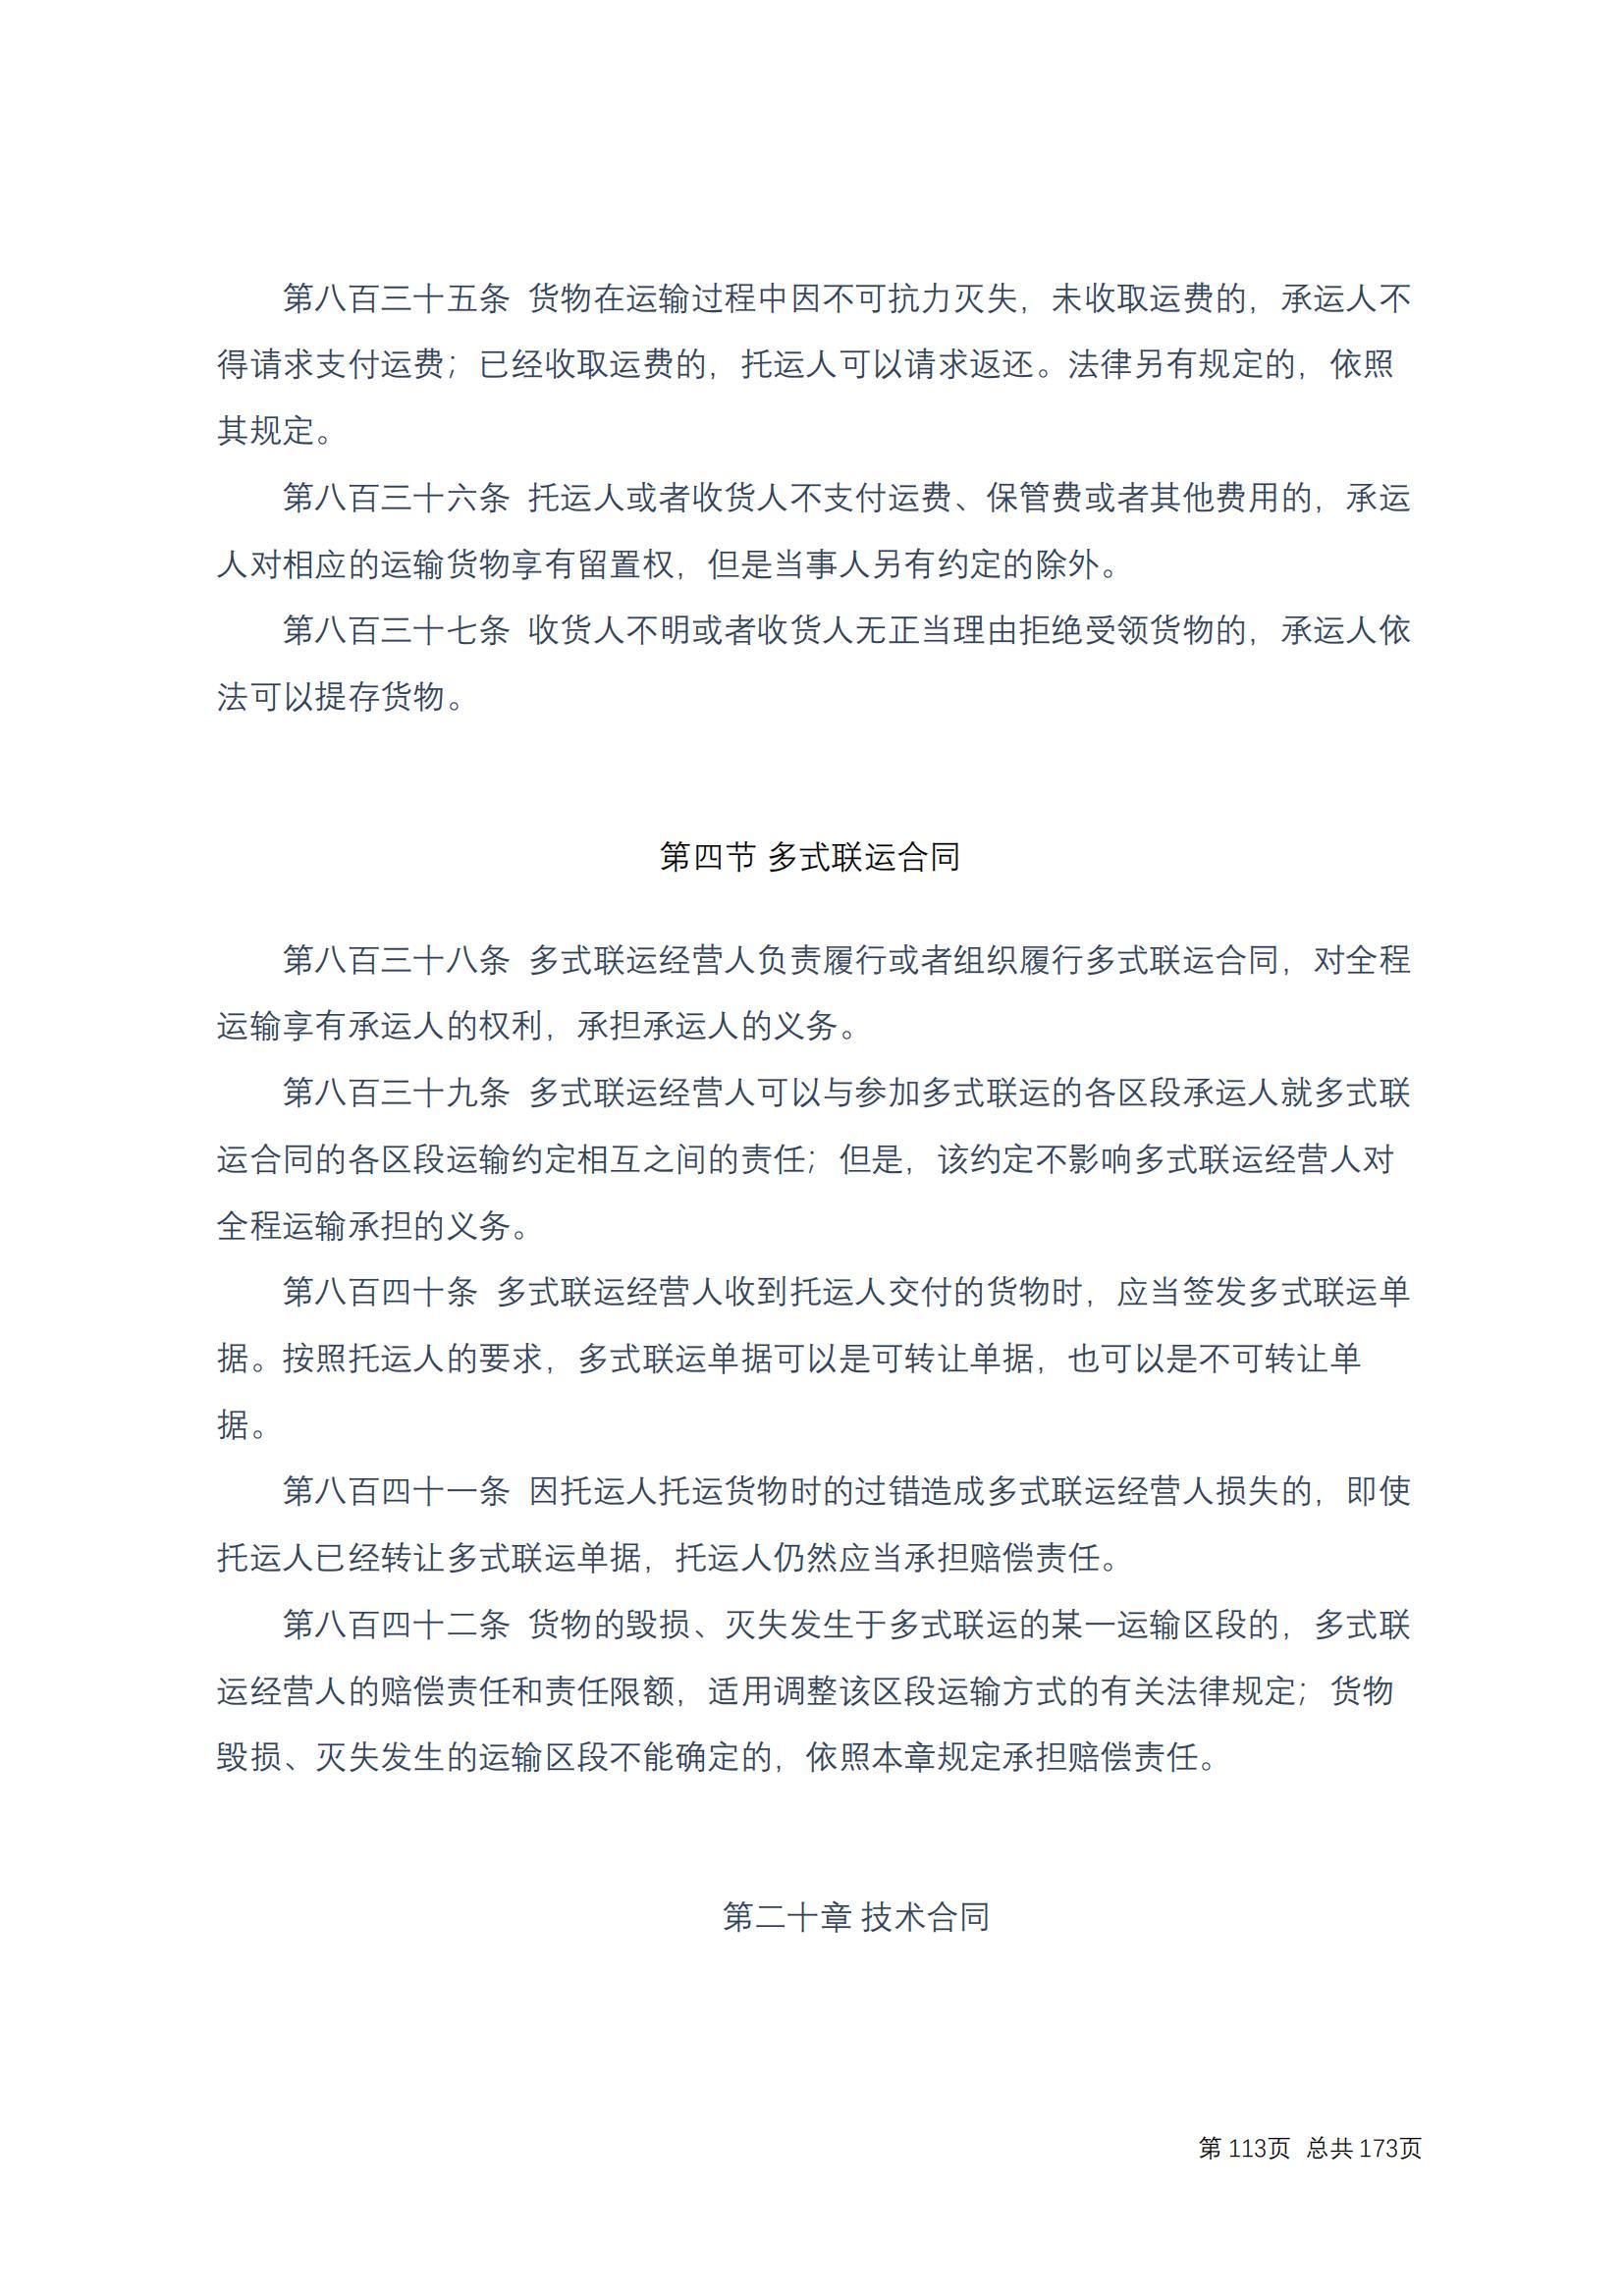 中华人民共和国民法典 修改过_112